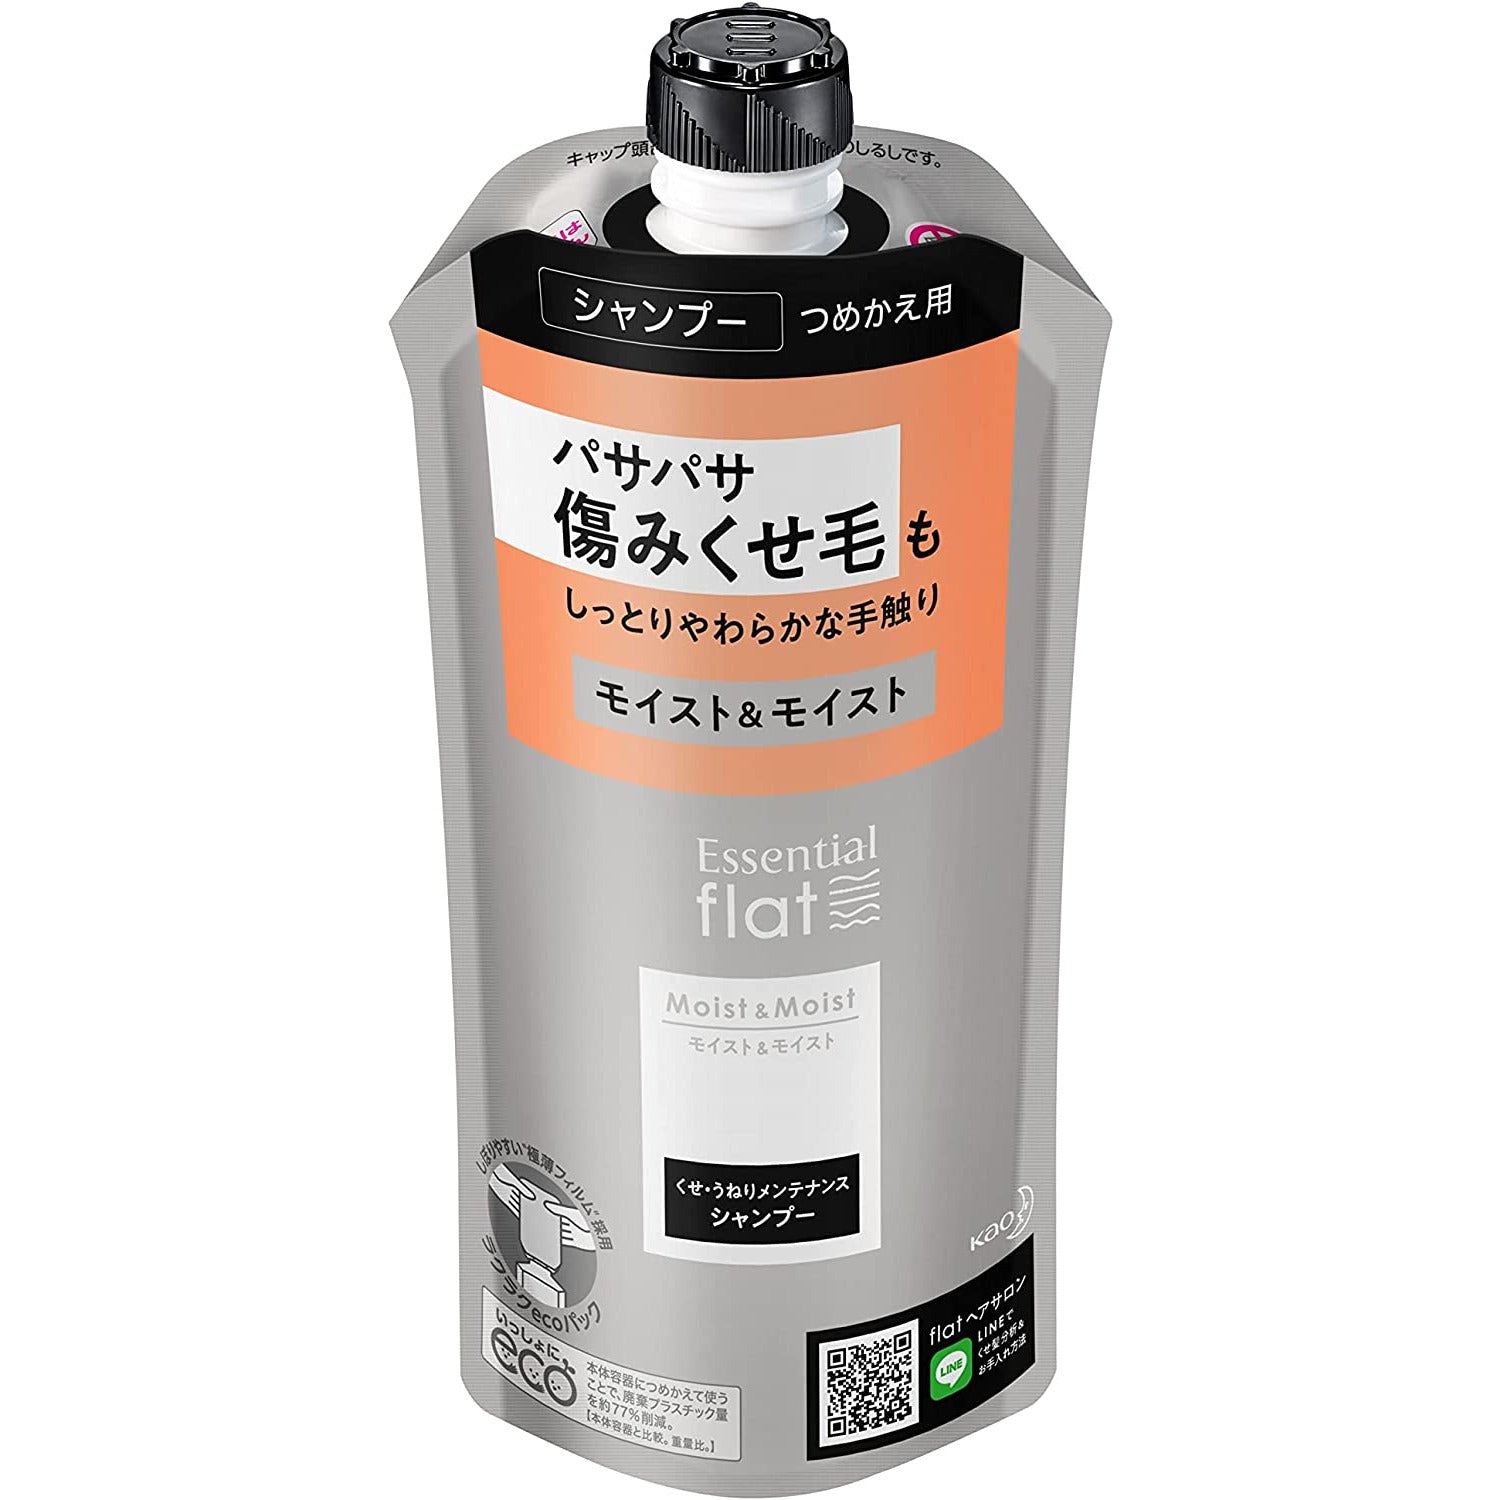 Kao Essentials flat Moist & Moist Shampoo Refill 340ml